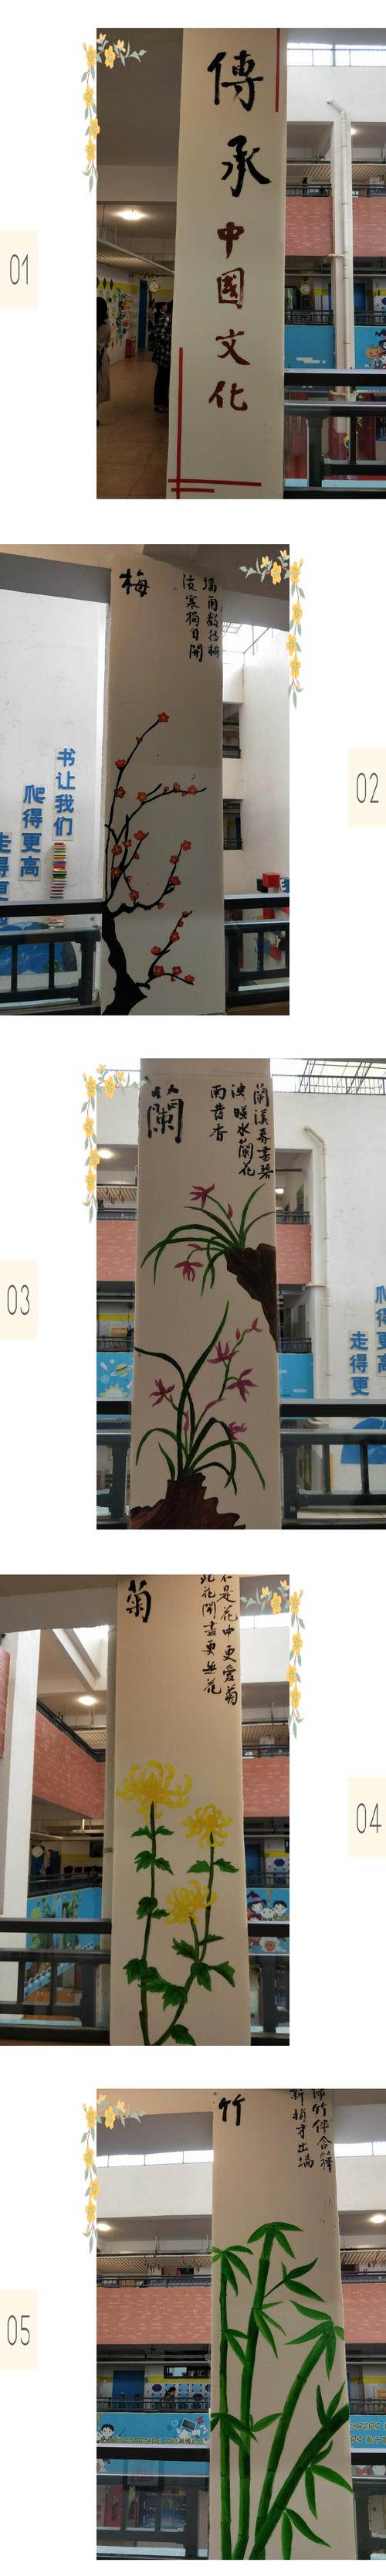 柱子的布置--中国传统文化:梅,兰,竹,菊以及春,夏,秋,冬.